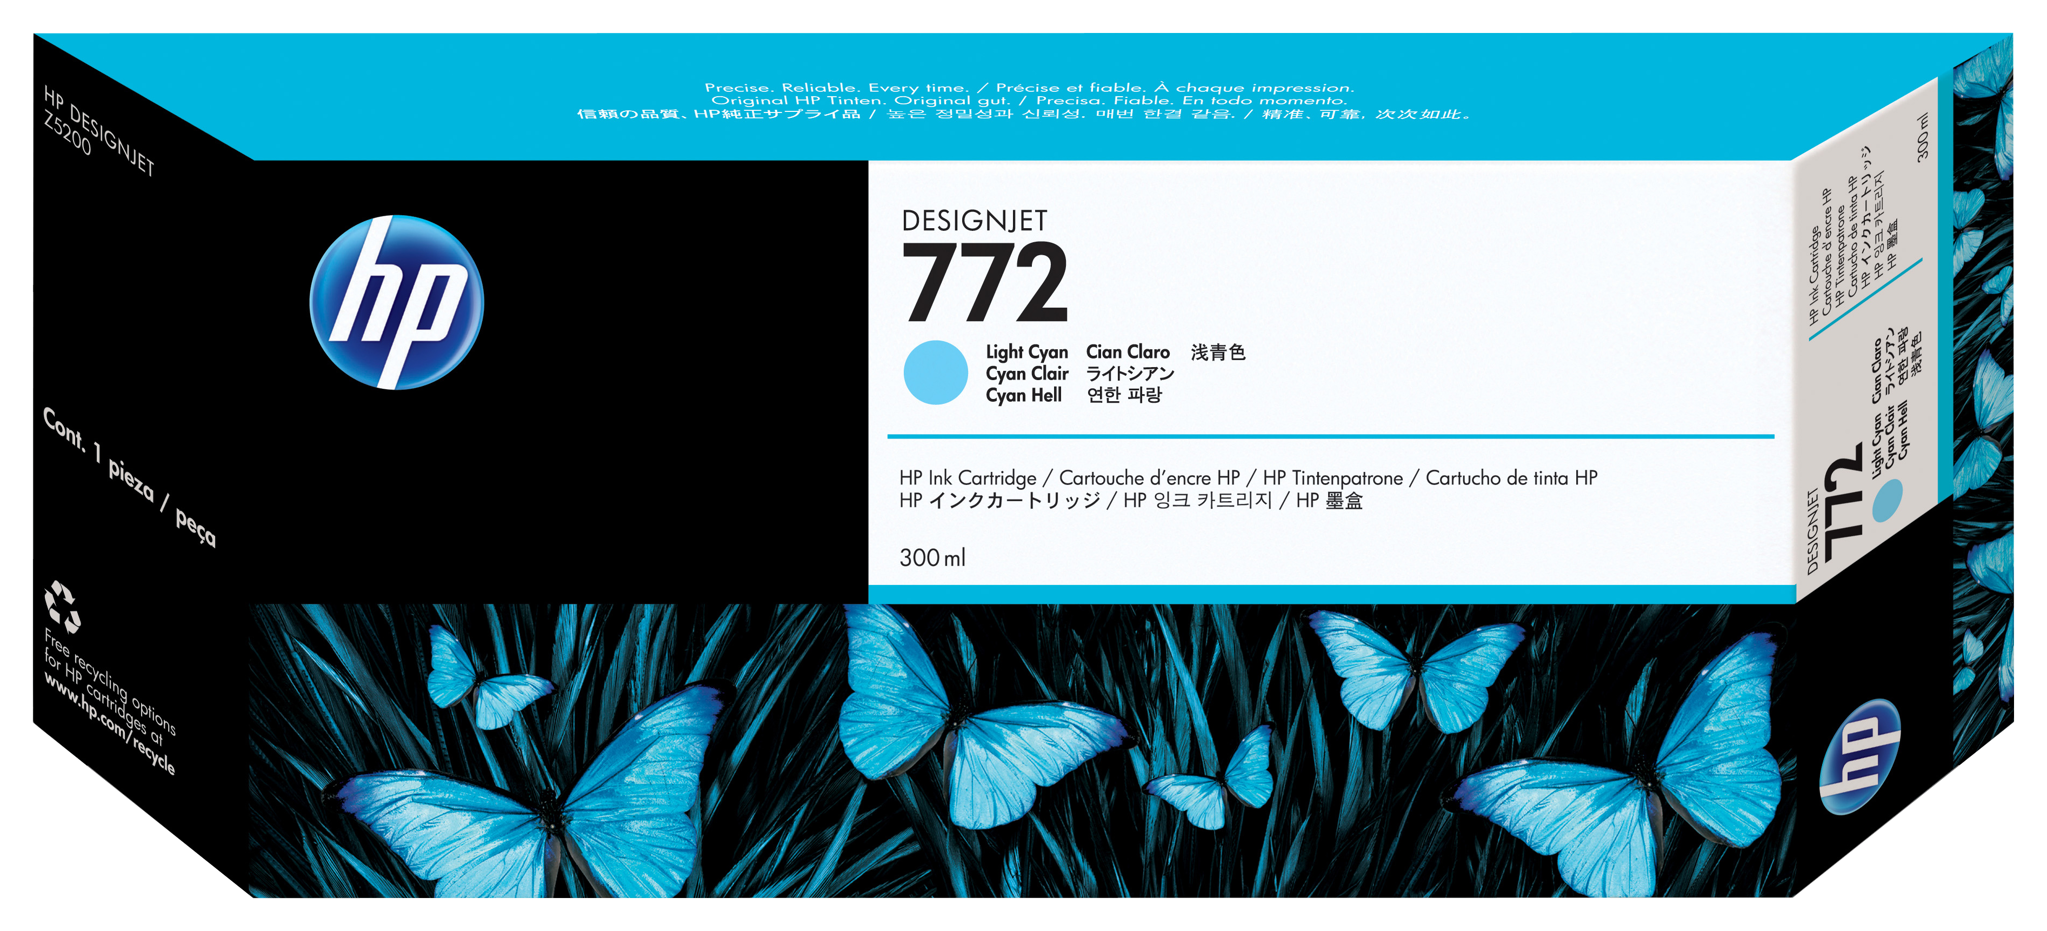 Bild von HP 772 Cyan hell DesignJet Druckerpatrone - 300 ml - Tinte auf Pigmentbasis - 300 ml - 1 Stück(e)